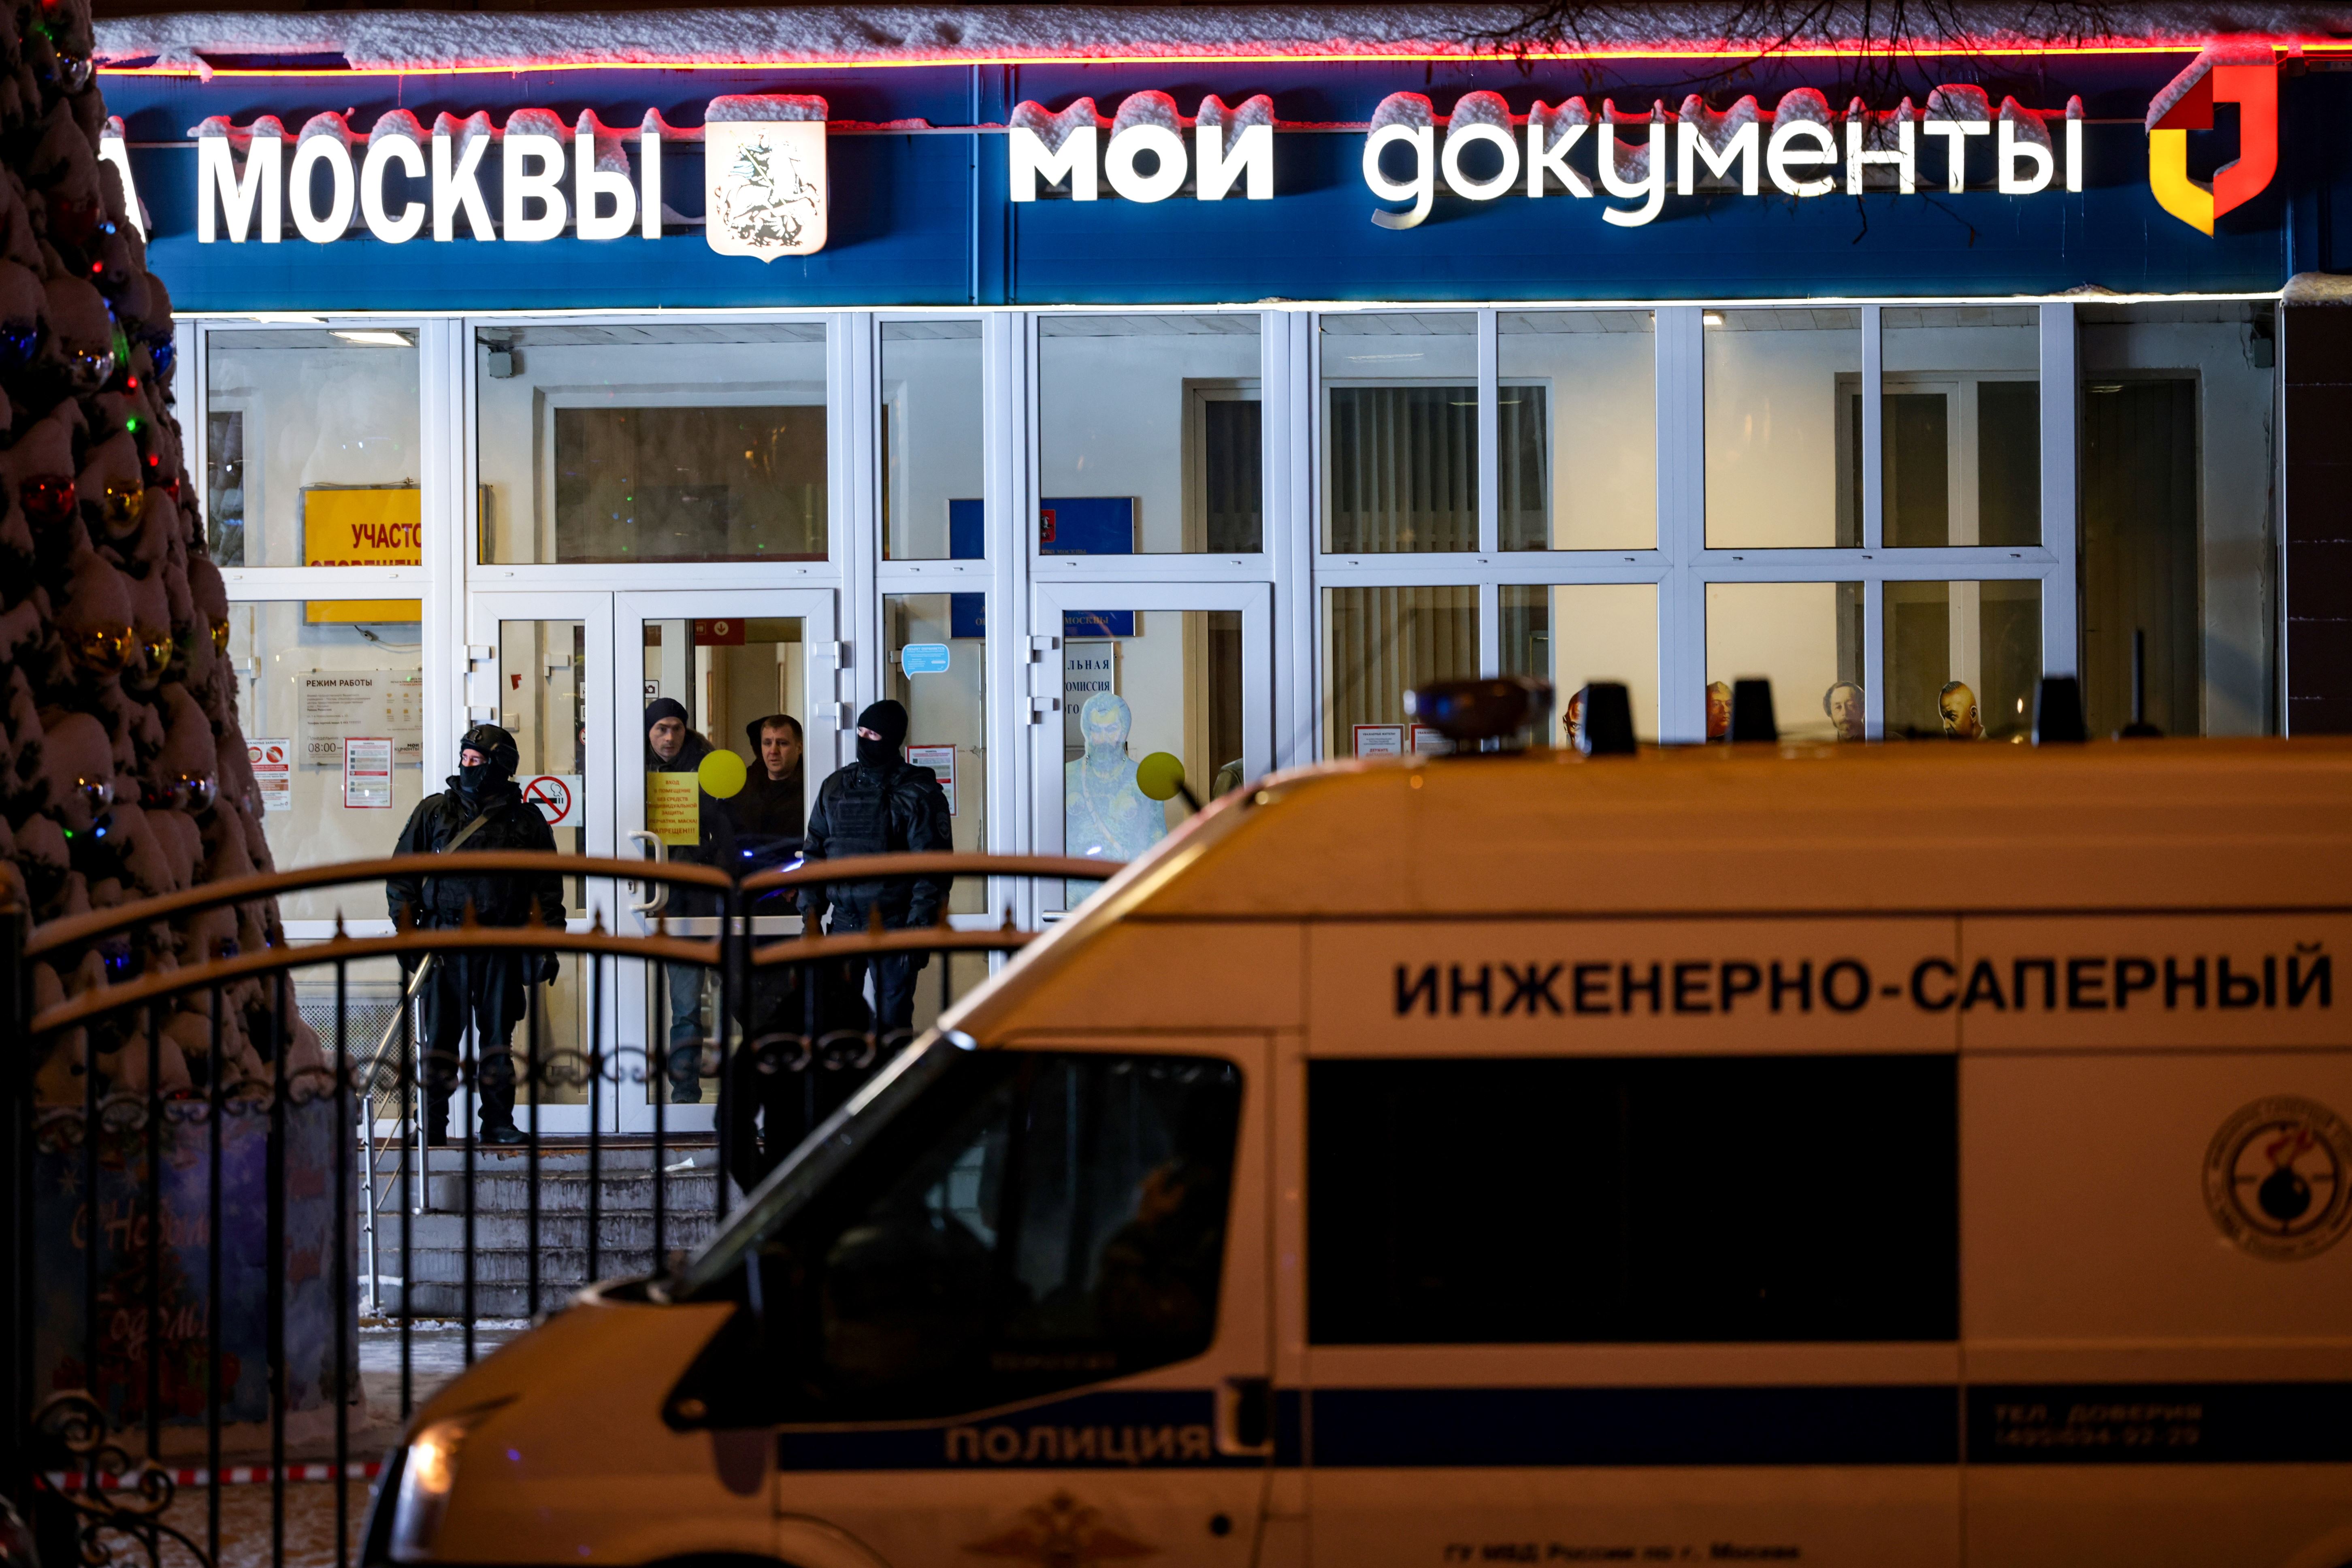 مقتل شخصين في إطلاق نار في موسكو .. والمهاجم في شباك الشرطة!